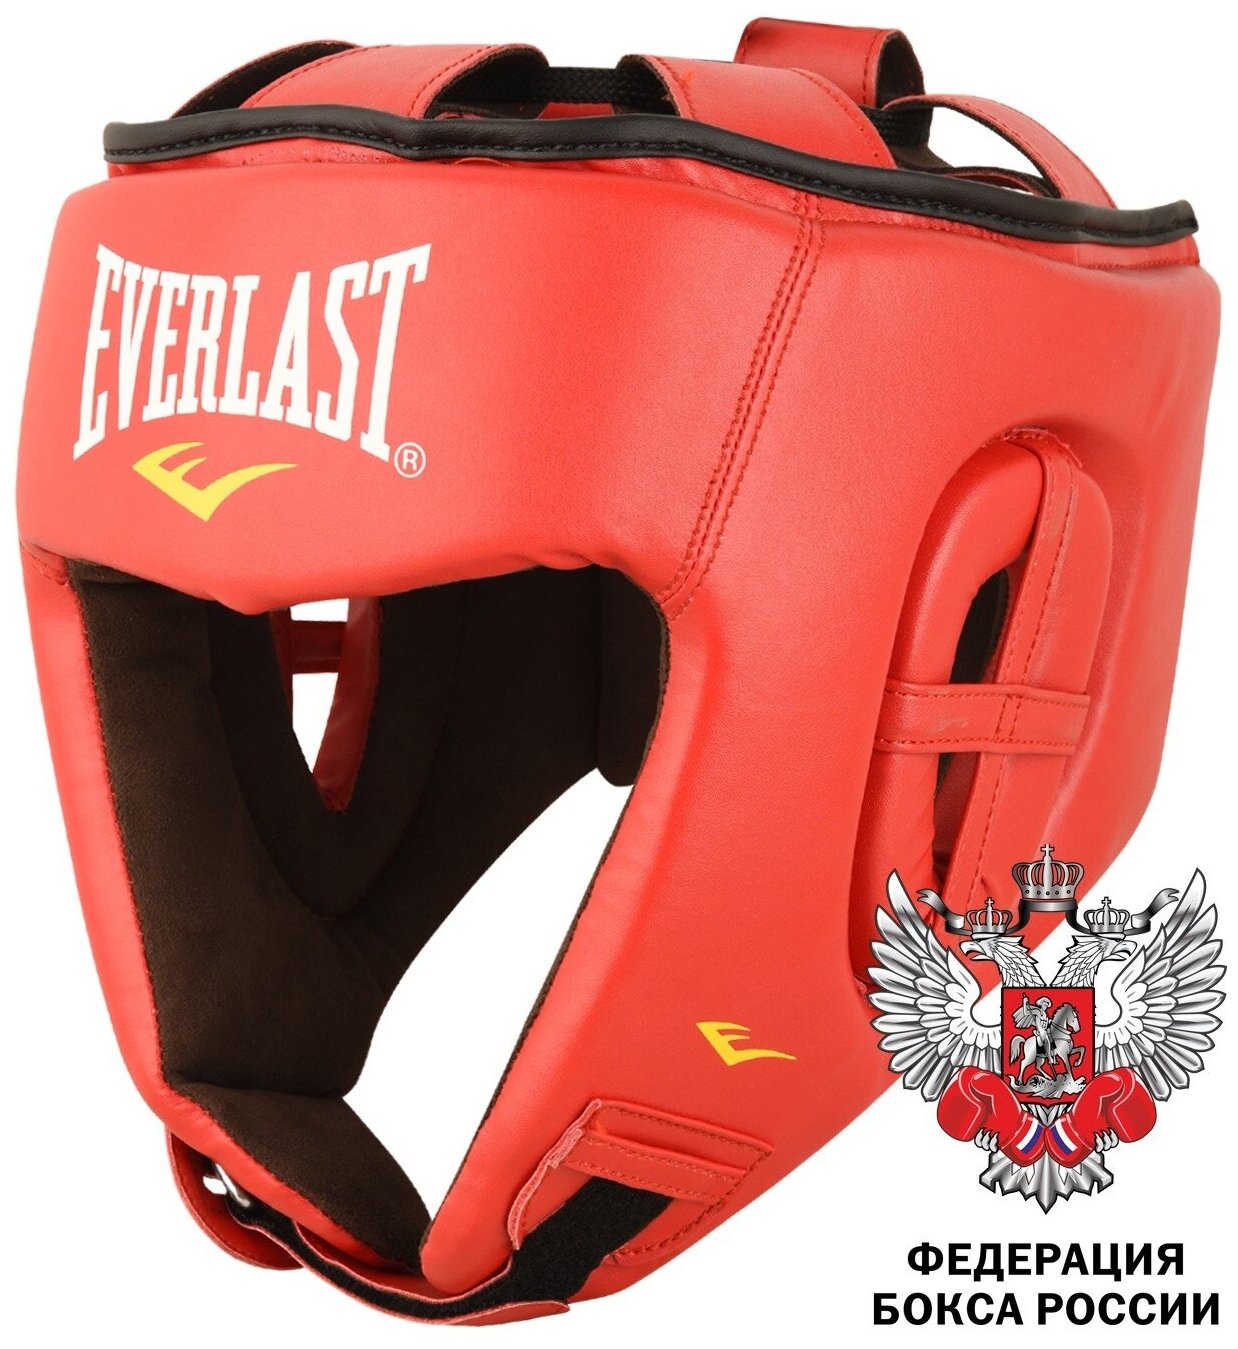 Шлем боксерский Amateur Competition PU красный - Everlast - Красный - S